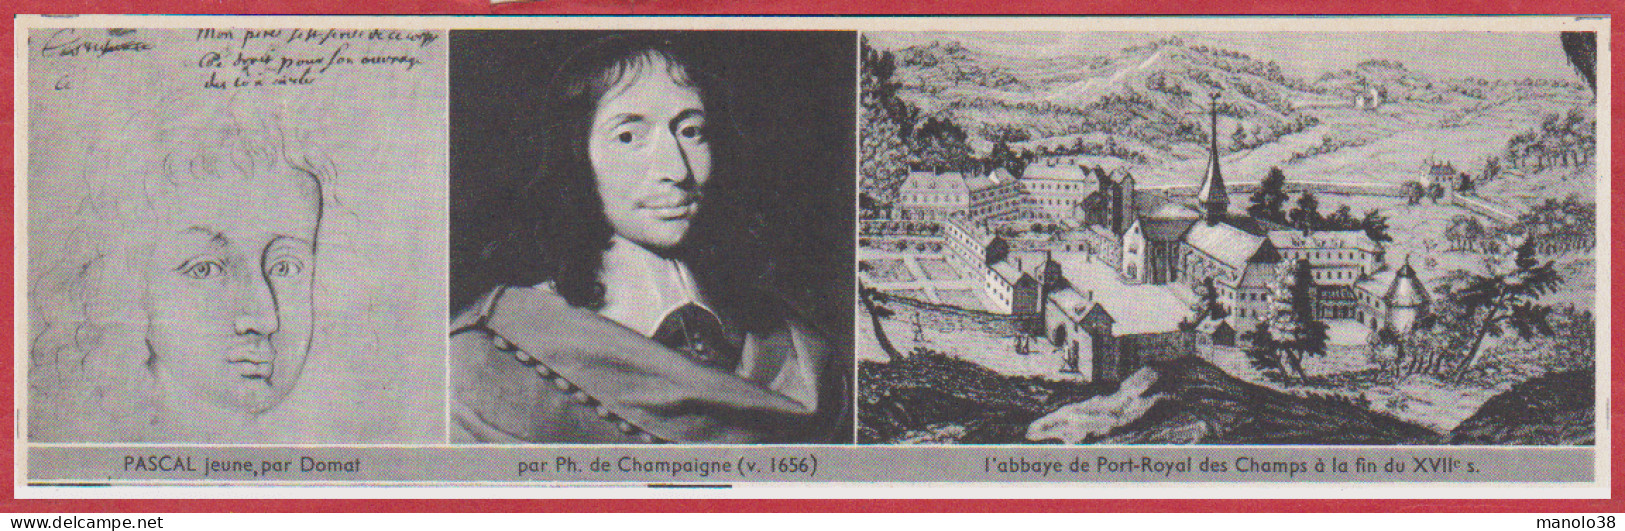 Blaise Pascal. Mathématicien. 2 Portraits, L'abbaye De Port Royal Des Champs Au XVIIe S. Jansénisme. Larousse 1960. - Historical Documents